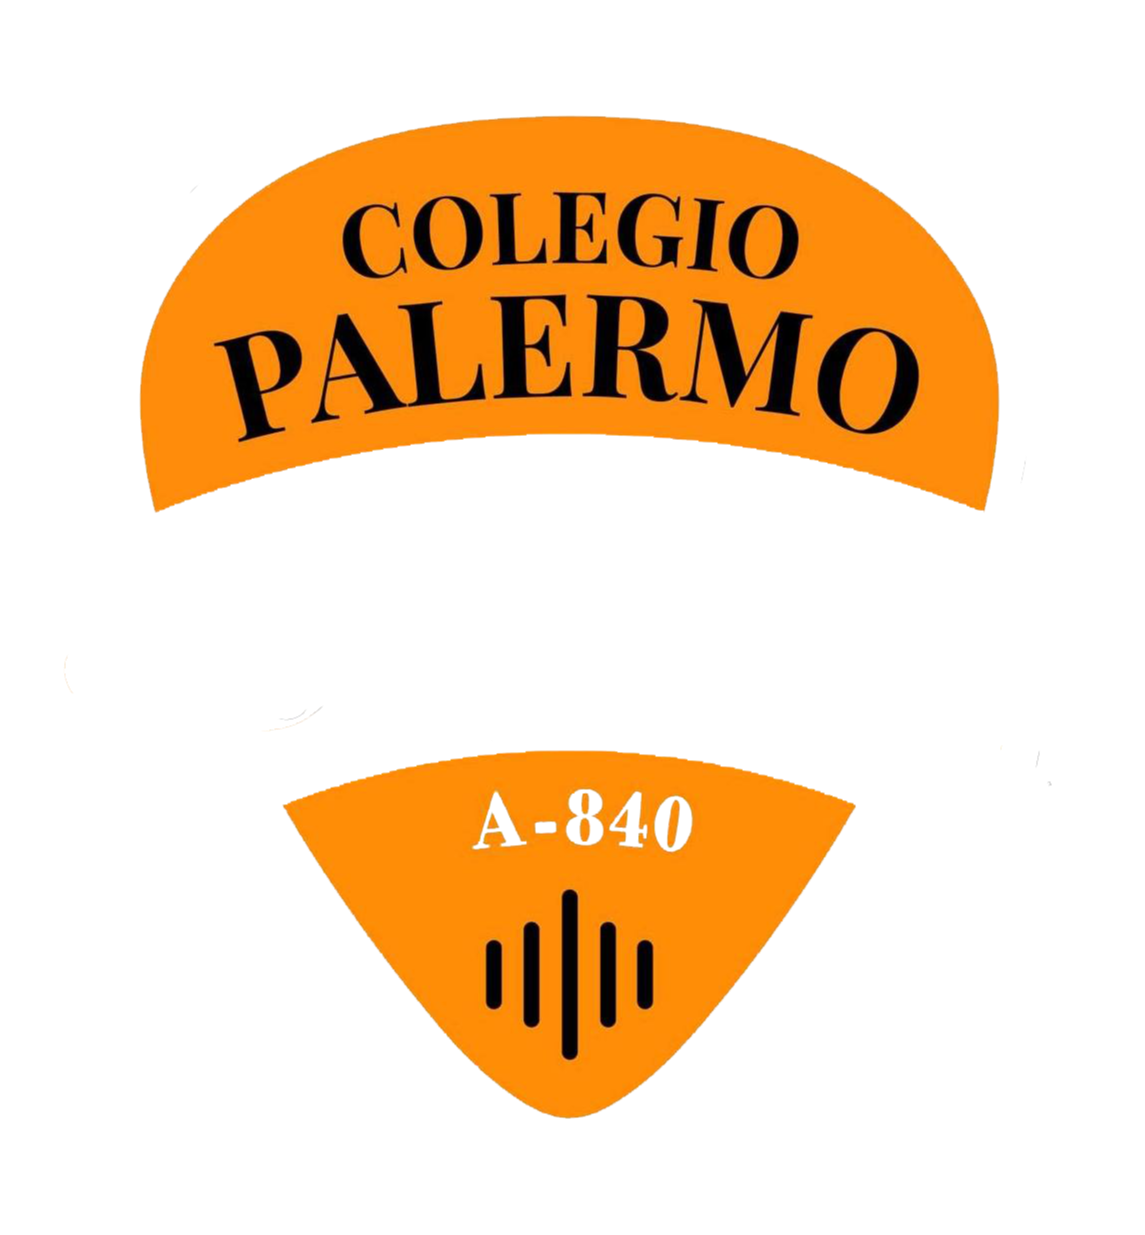 Colegio Palermo Sounder (A-840)